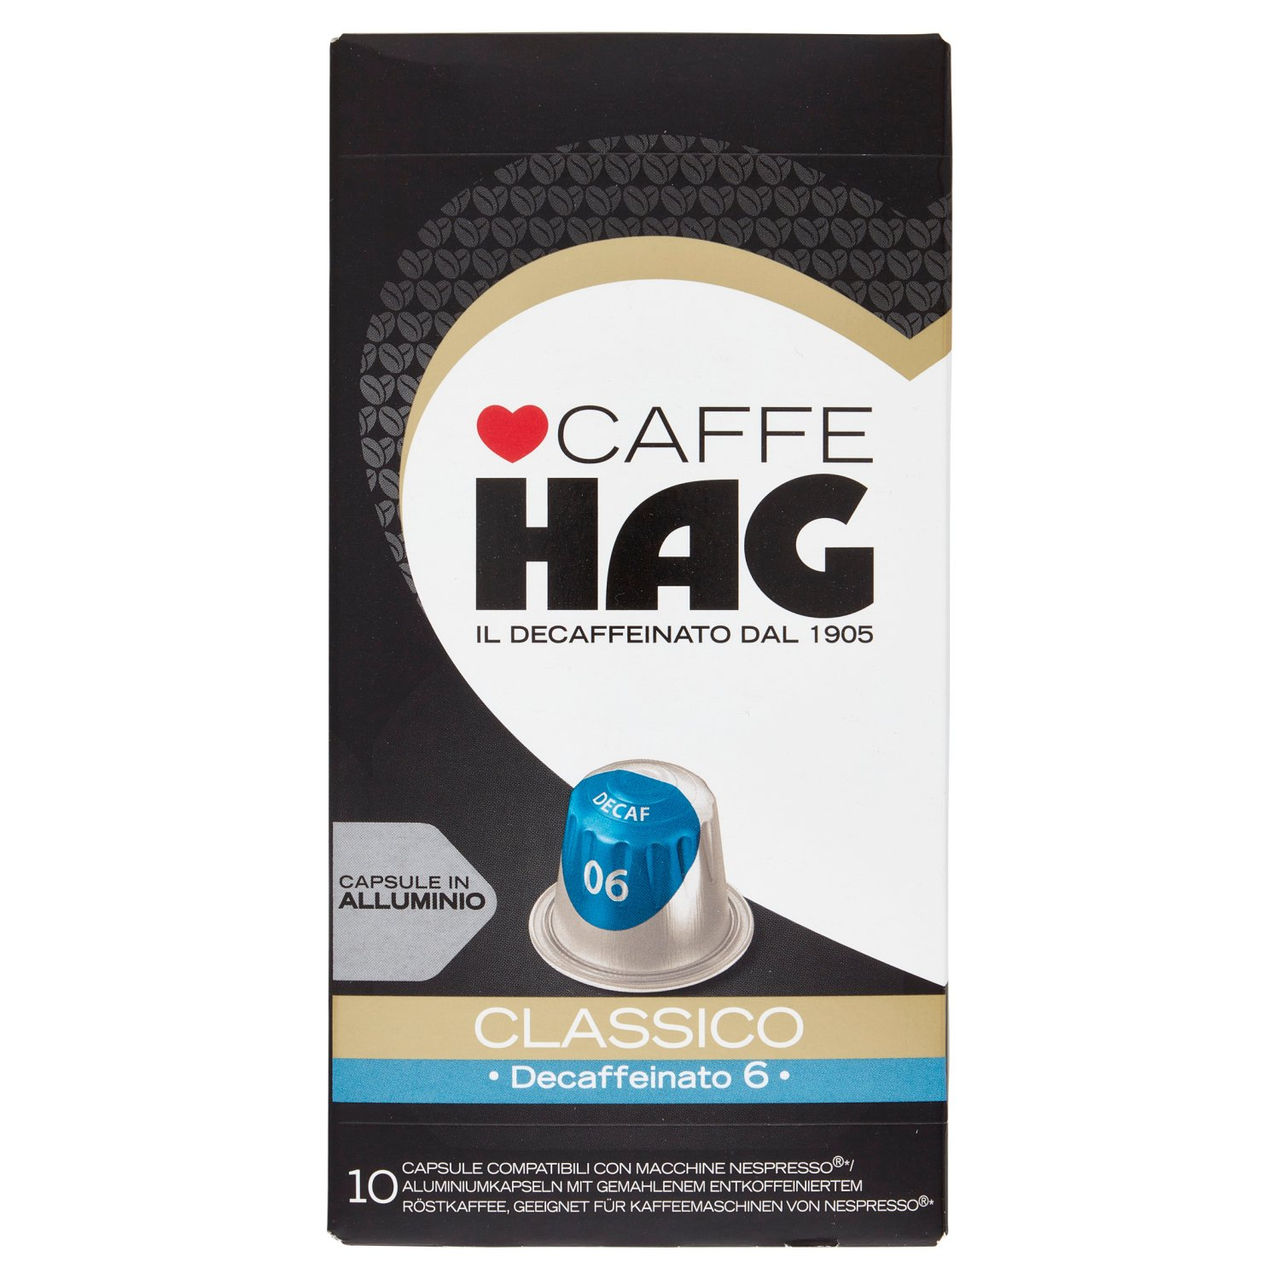 Caffè HAG Classico Decaffeinato 6 10 Capsule Compatibili con Macchine Nespresso* 52 g